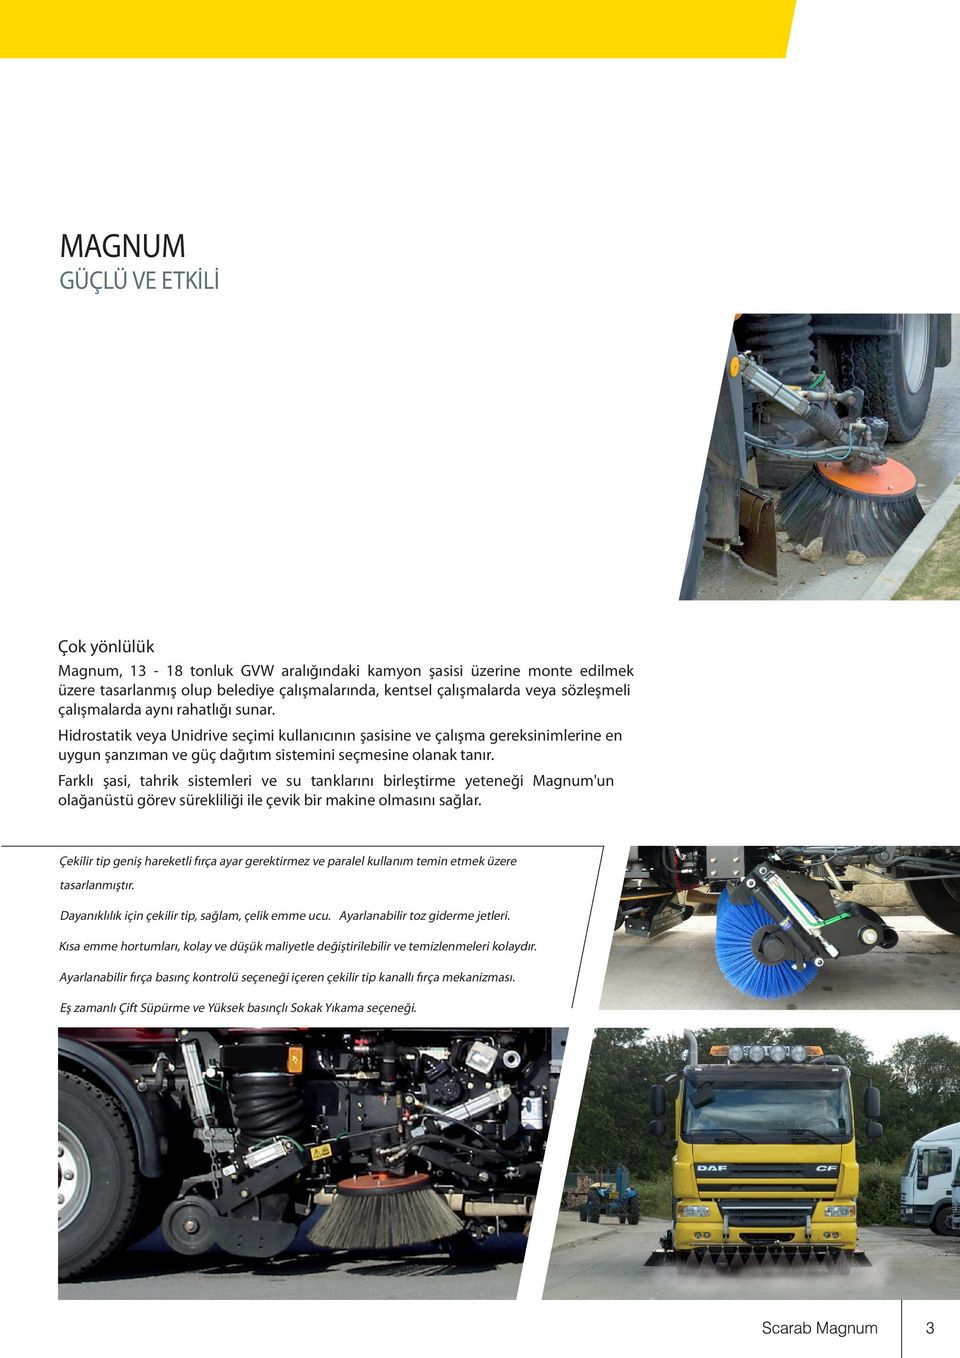 Farklı şasi, tahrik sistemleri ve su tanklarını birleştirme yeteneği Magnum'un olağanüstü görev sürekliliği ile çevik bir makine olmasını sağlar.